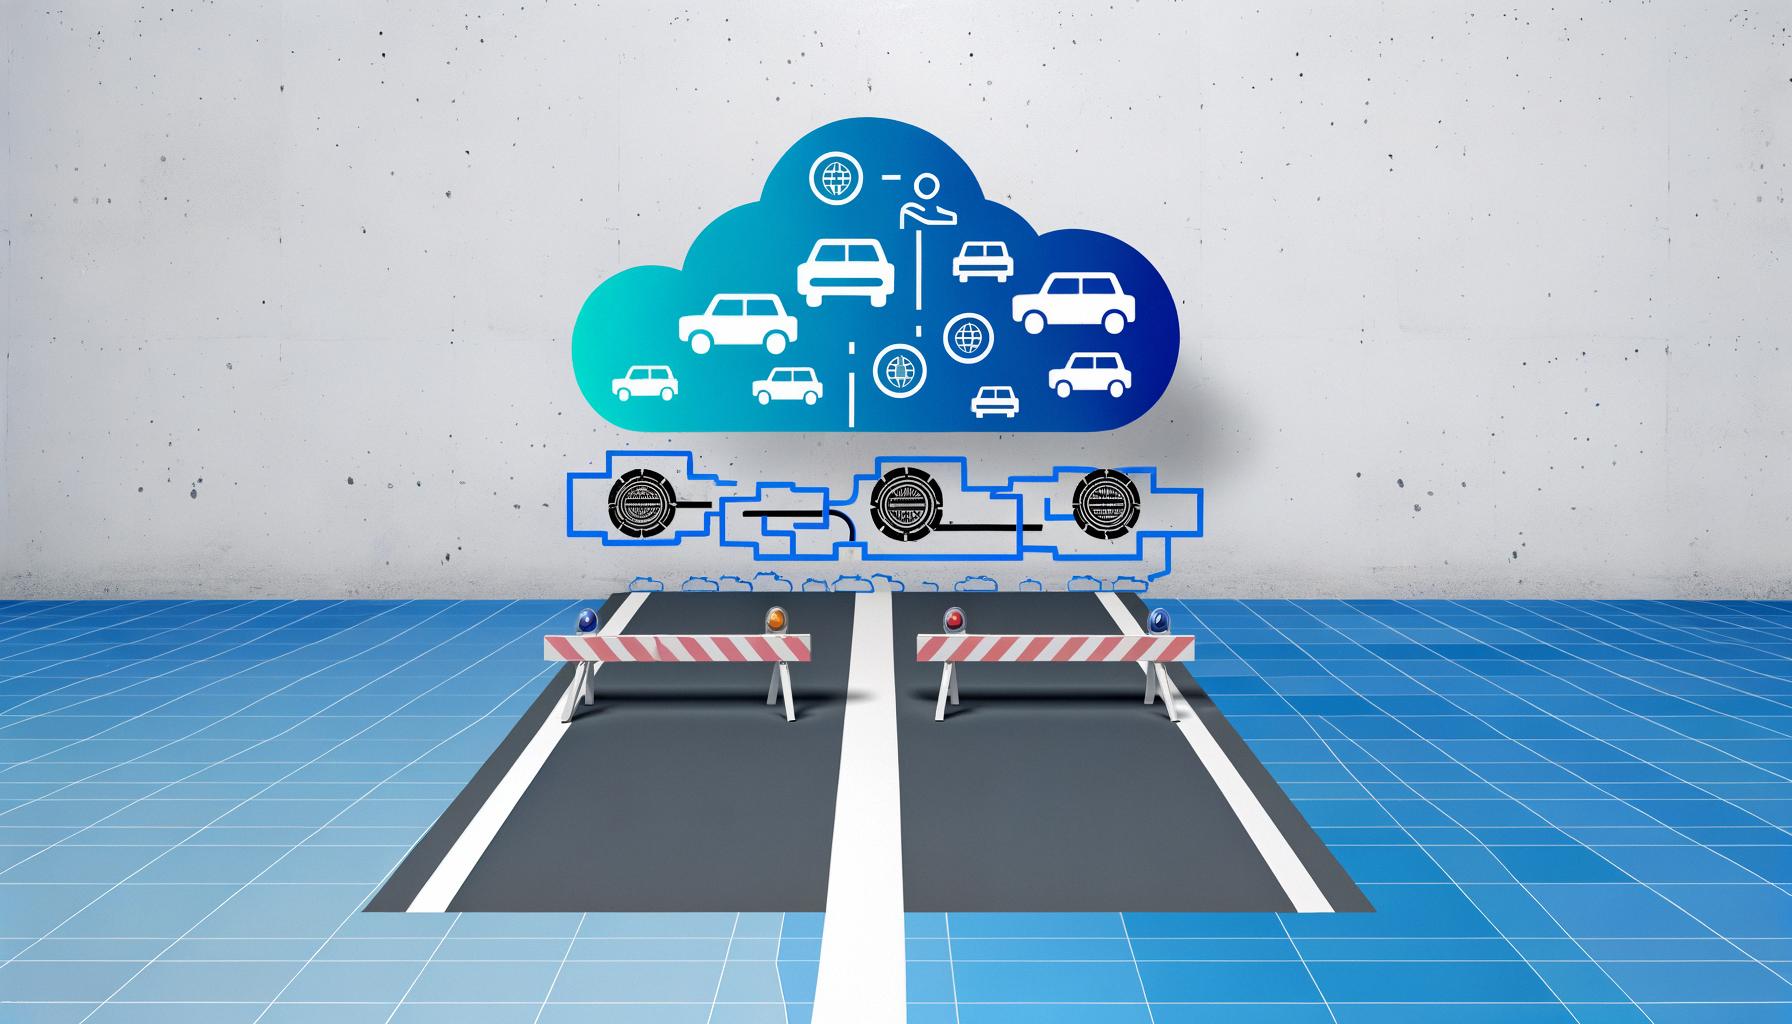 Autonomous vehicles progress yet face safety, regulatory, and public trust challenges.